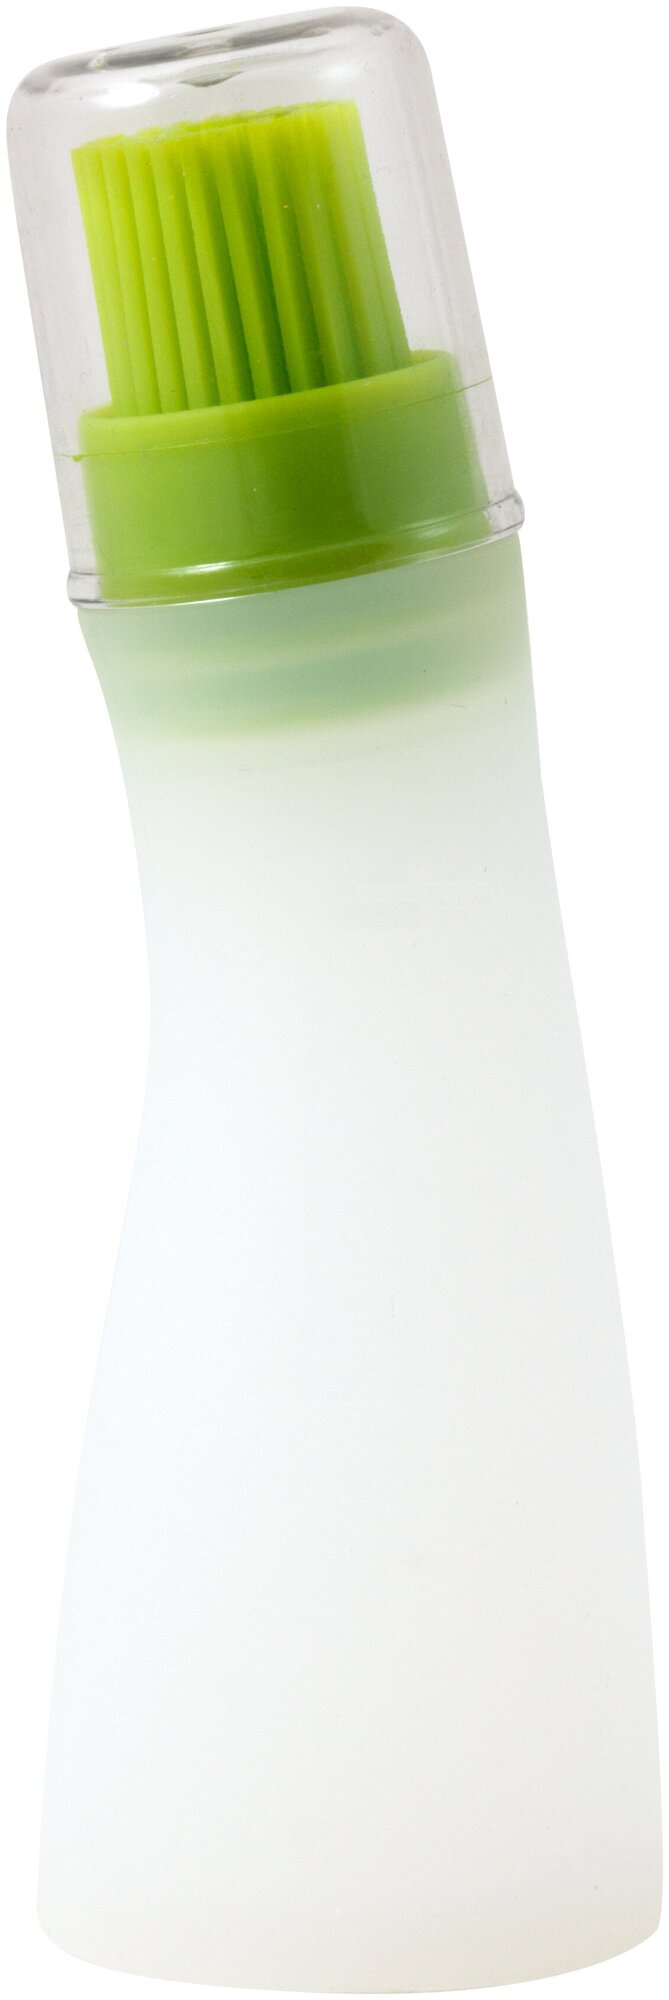 Емкость для масла с кисточкой CAPACITA (силикон пластик) размер: 4*13 см Mallony 001797